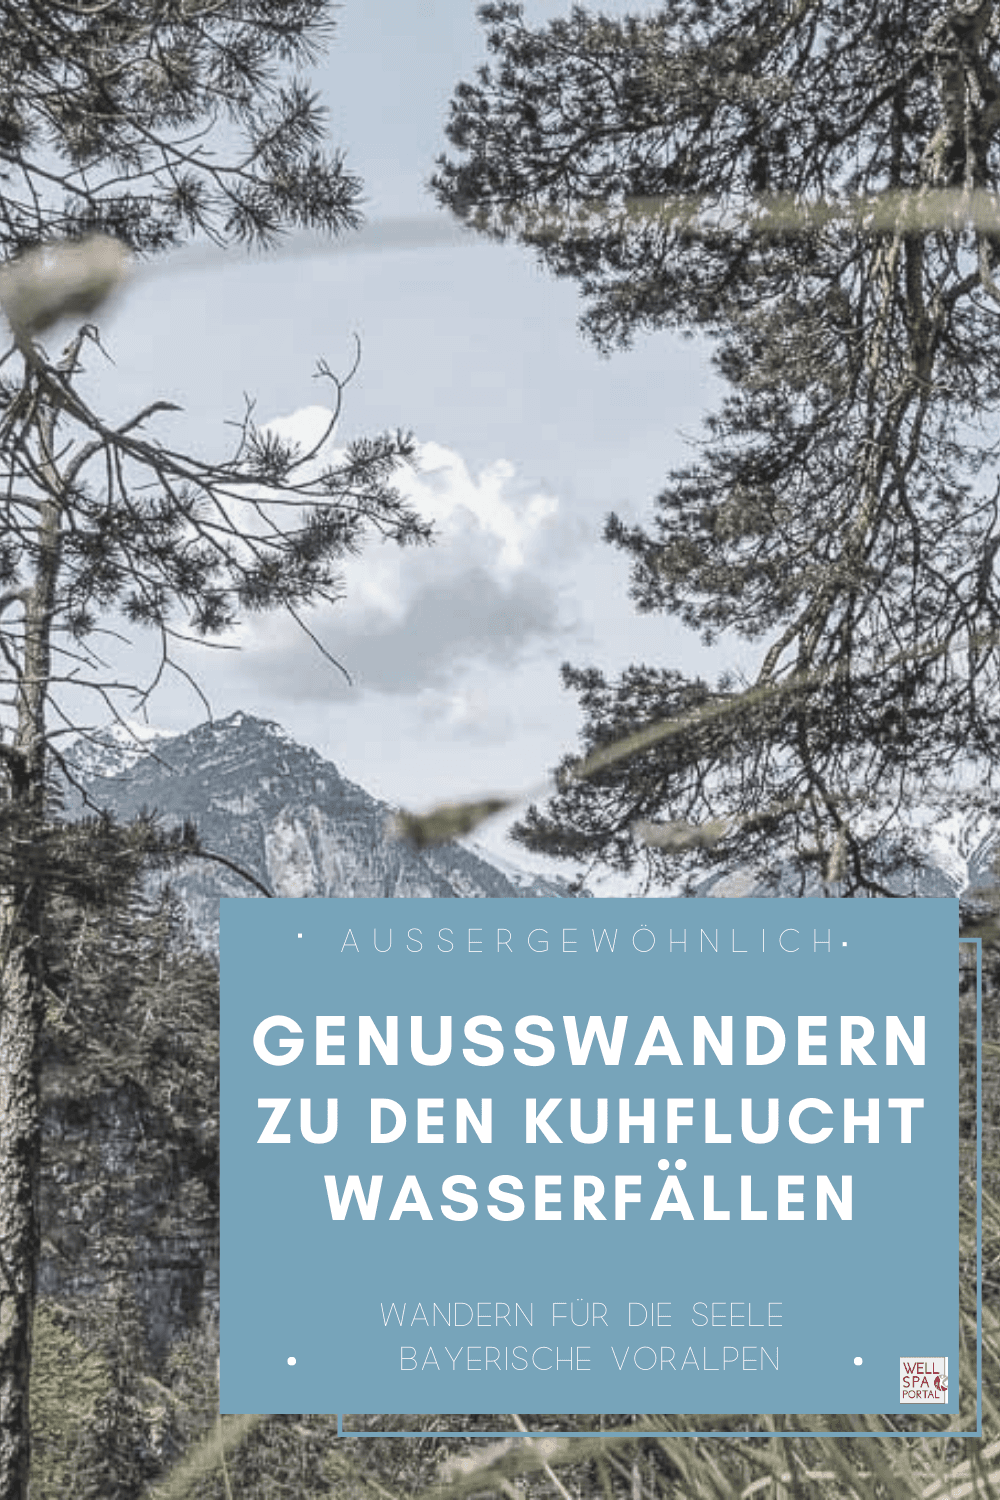 Wandern für die Seele - Wohlfühlwege der Bayerischen Voralpen an den Kuhflucht Wasserfällen